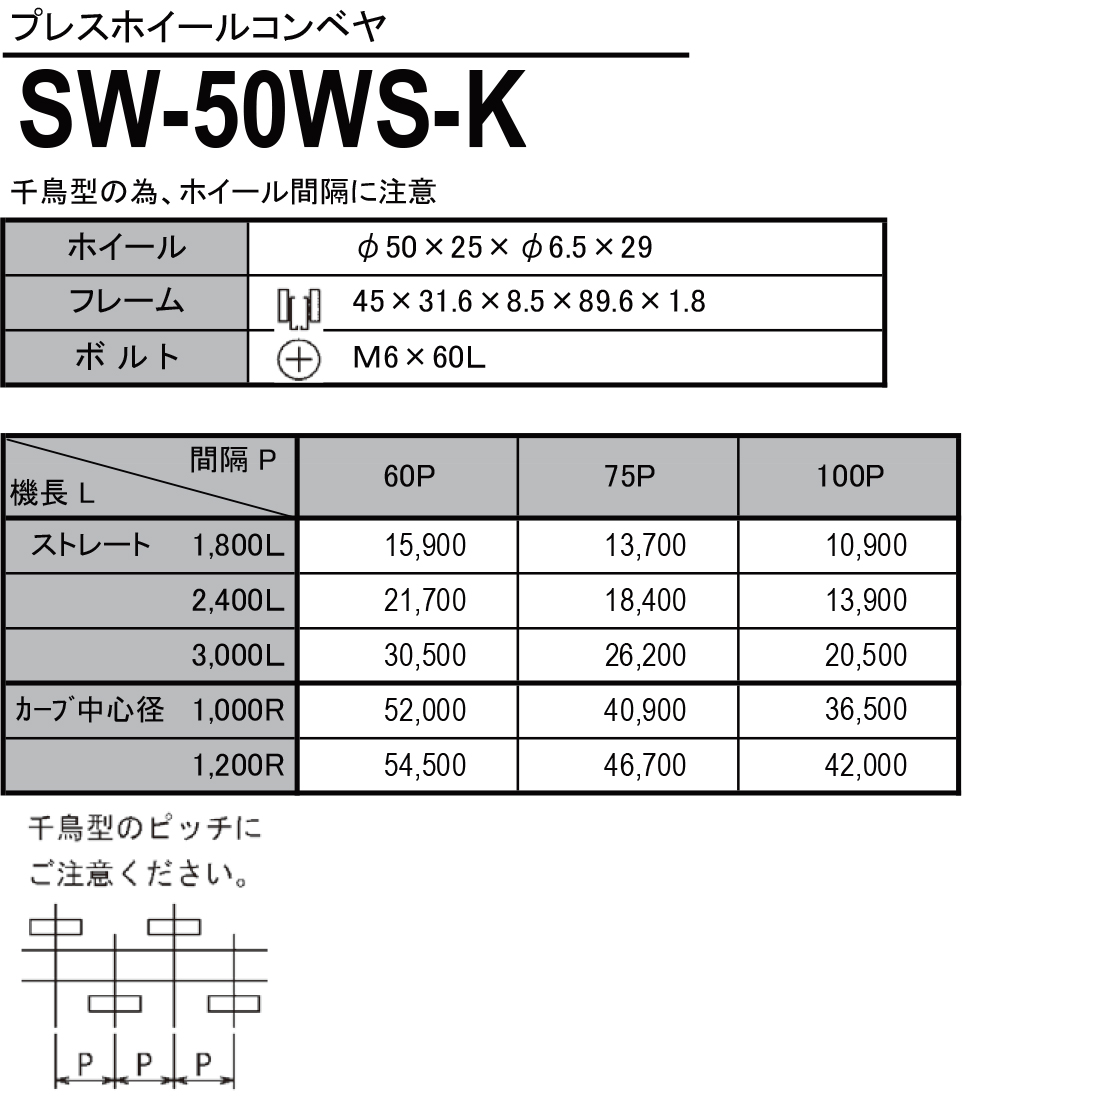 SW-50WS-K　プレスホイールコンベヤ(スチール製）　ホイールコンベヤ　価格表